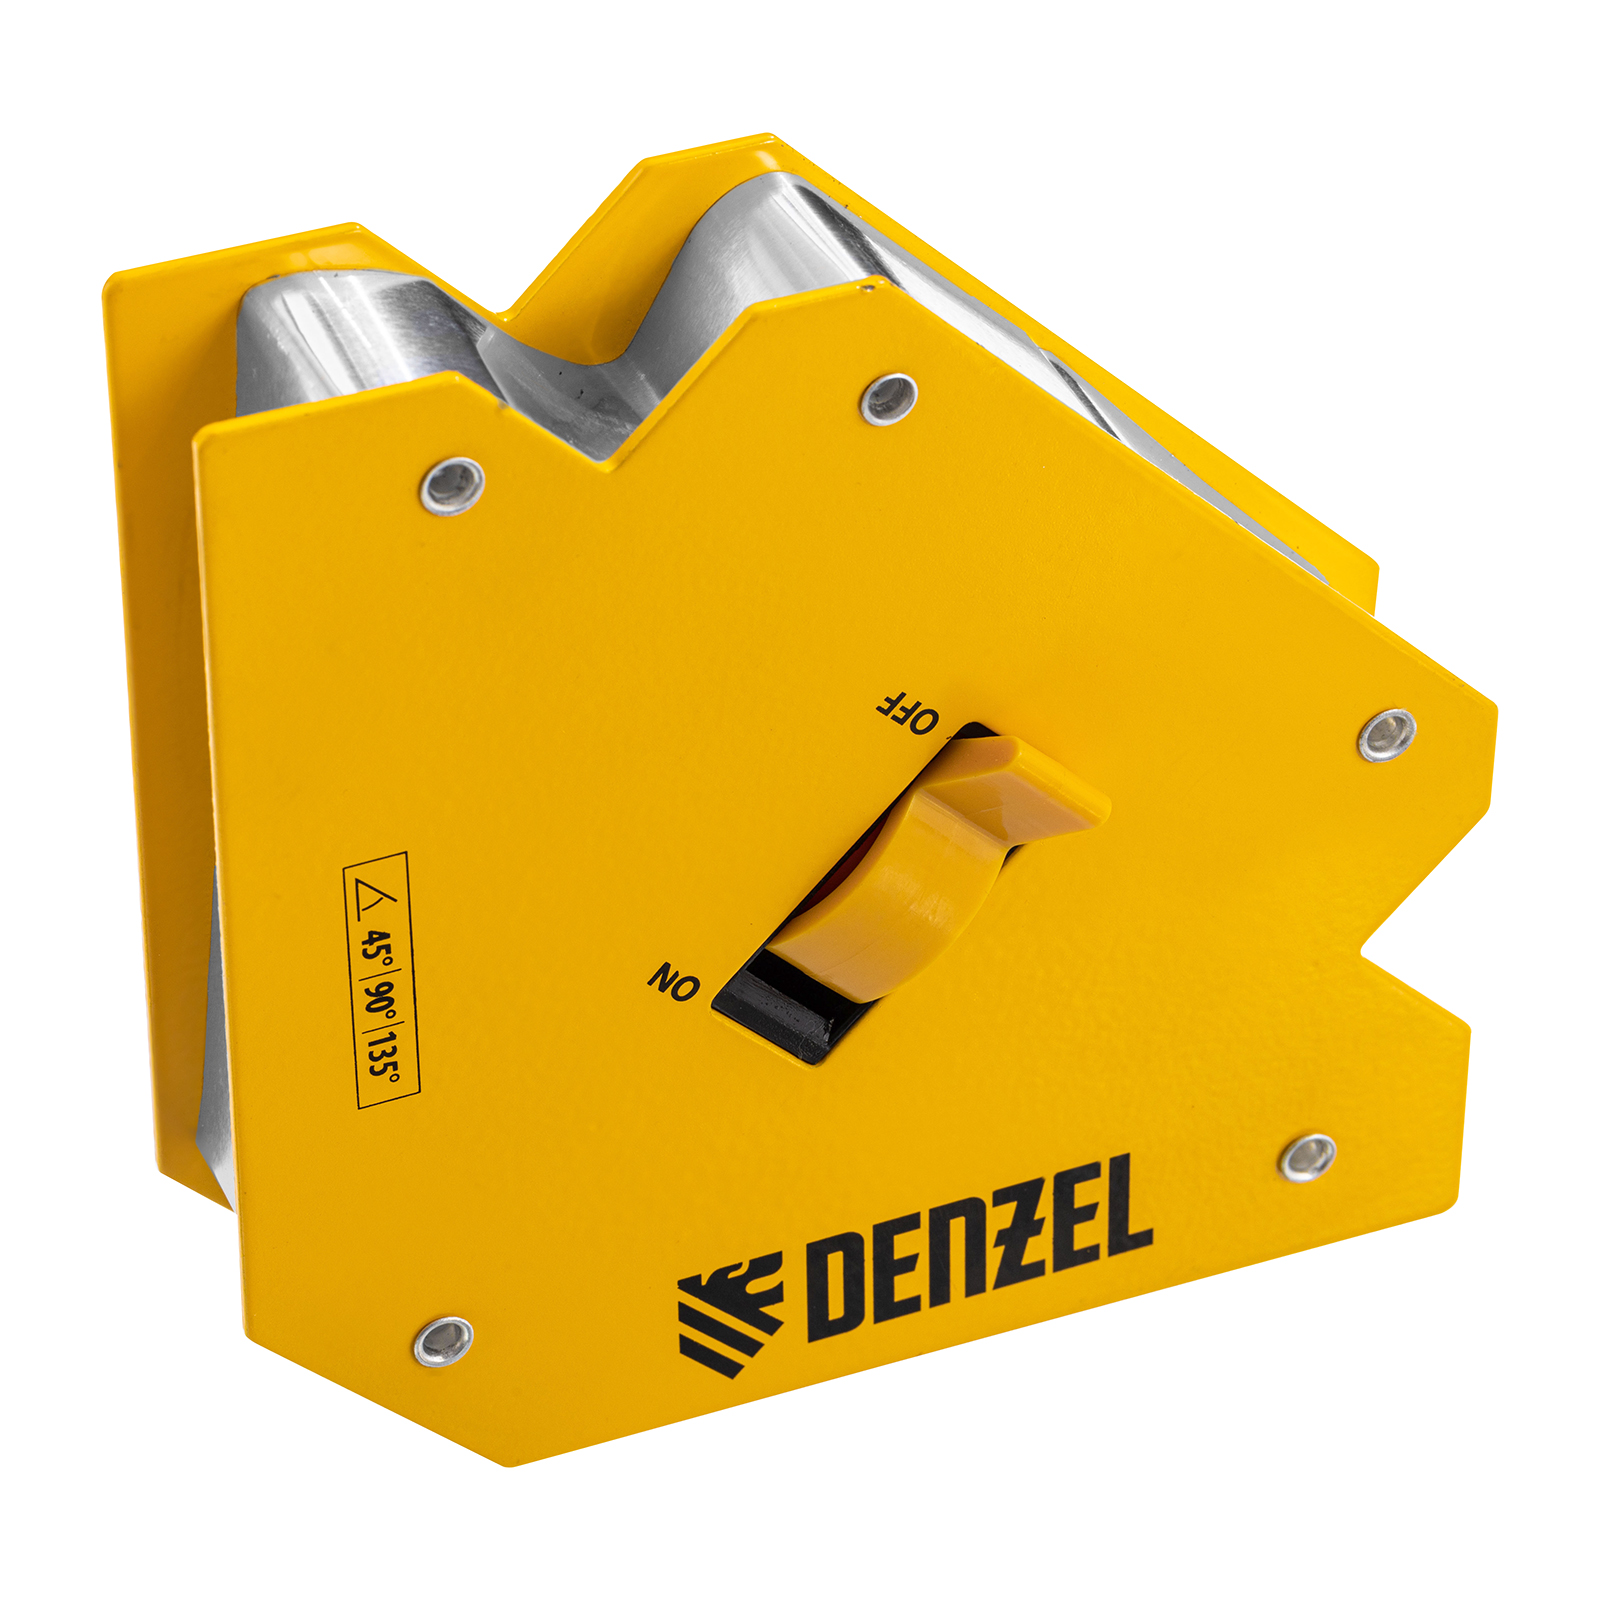 Фиксатор магнитный отключаемый для сварочных работ DENZEL усилие 55 LB, 45х90х135 гр 97564 фиксатор магнитный отключаемый для сварочных работ denzel усилие 30 lb 45х90 град 97561